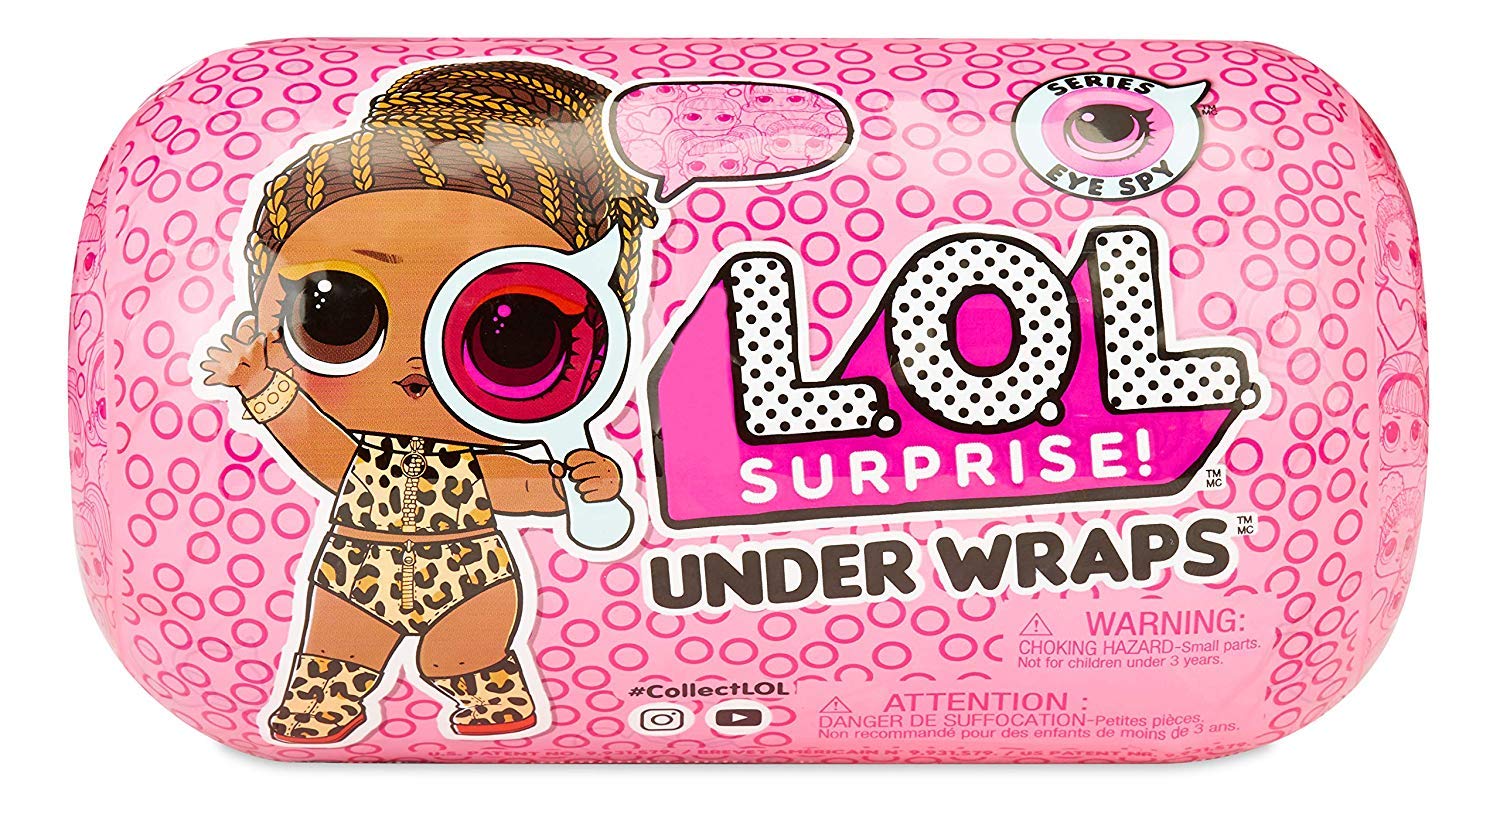 L.O.L. Surprise! Under Wraps Doll- Series Eye Spy 2A